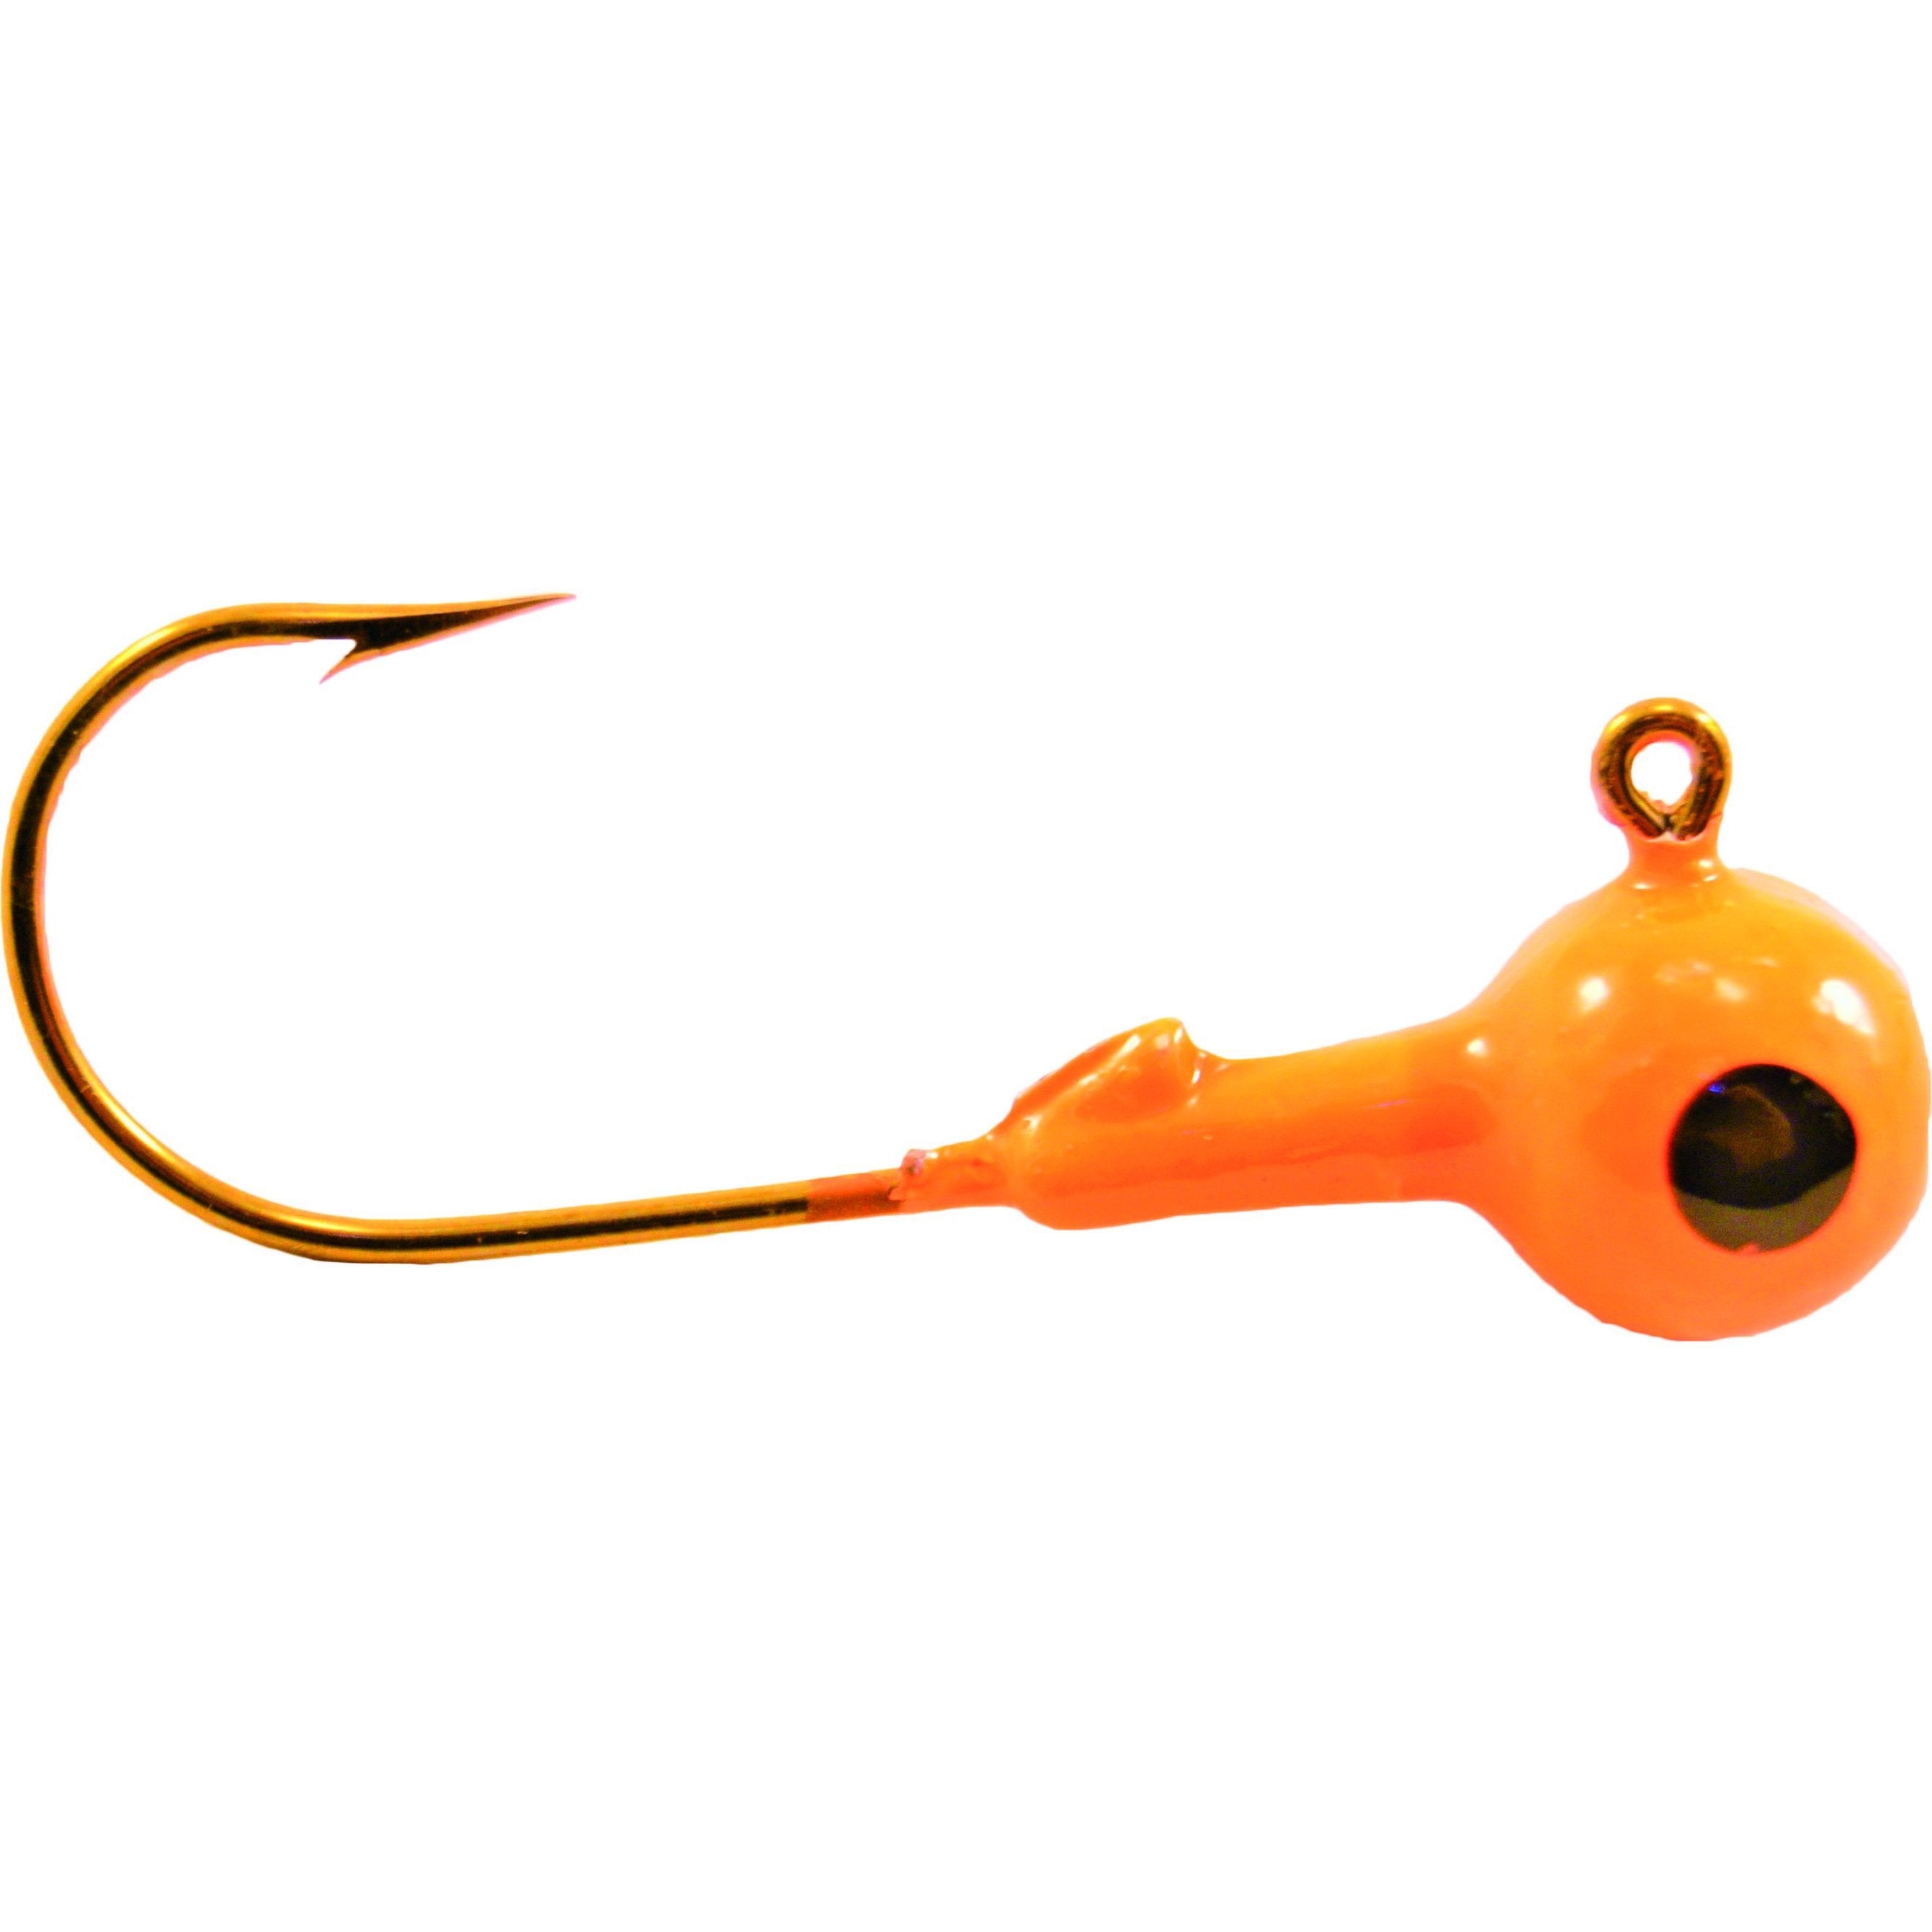 Round Head Jig Heads with Eyes 1/16oz Size 4 Bronze Hook - Yellow/Orange